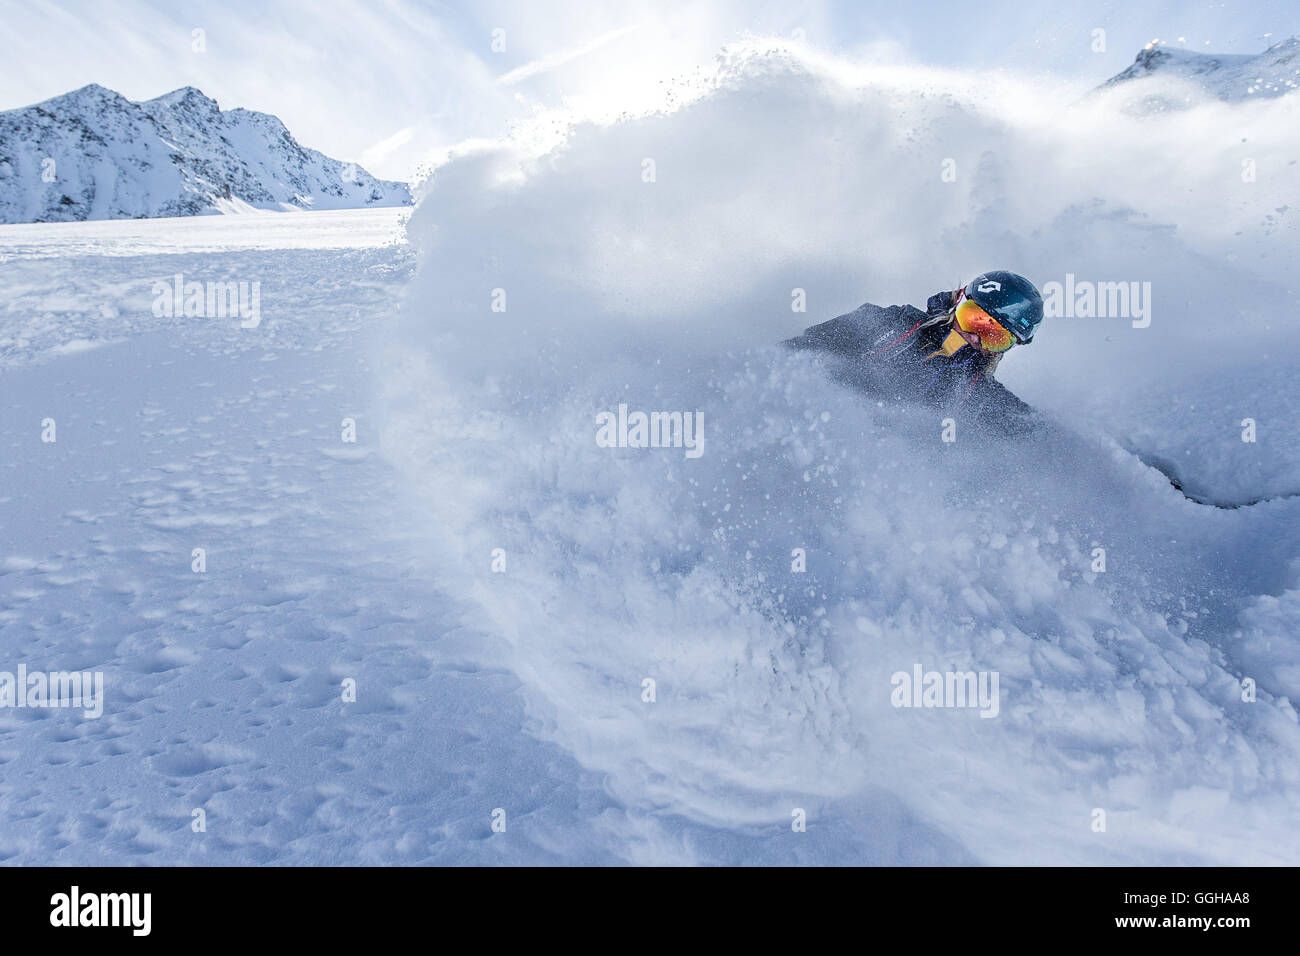 Young female freeskier riding through deep powder snow in the mountains, Pitztal, Tyrol, Austria Stock Photo